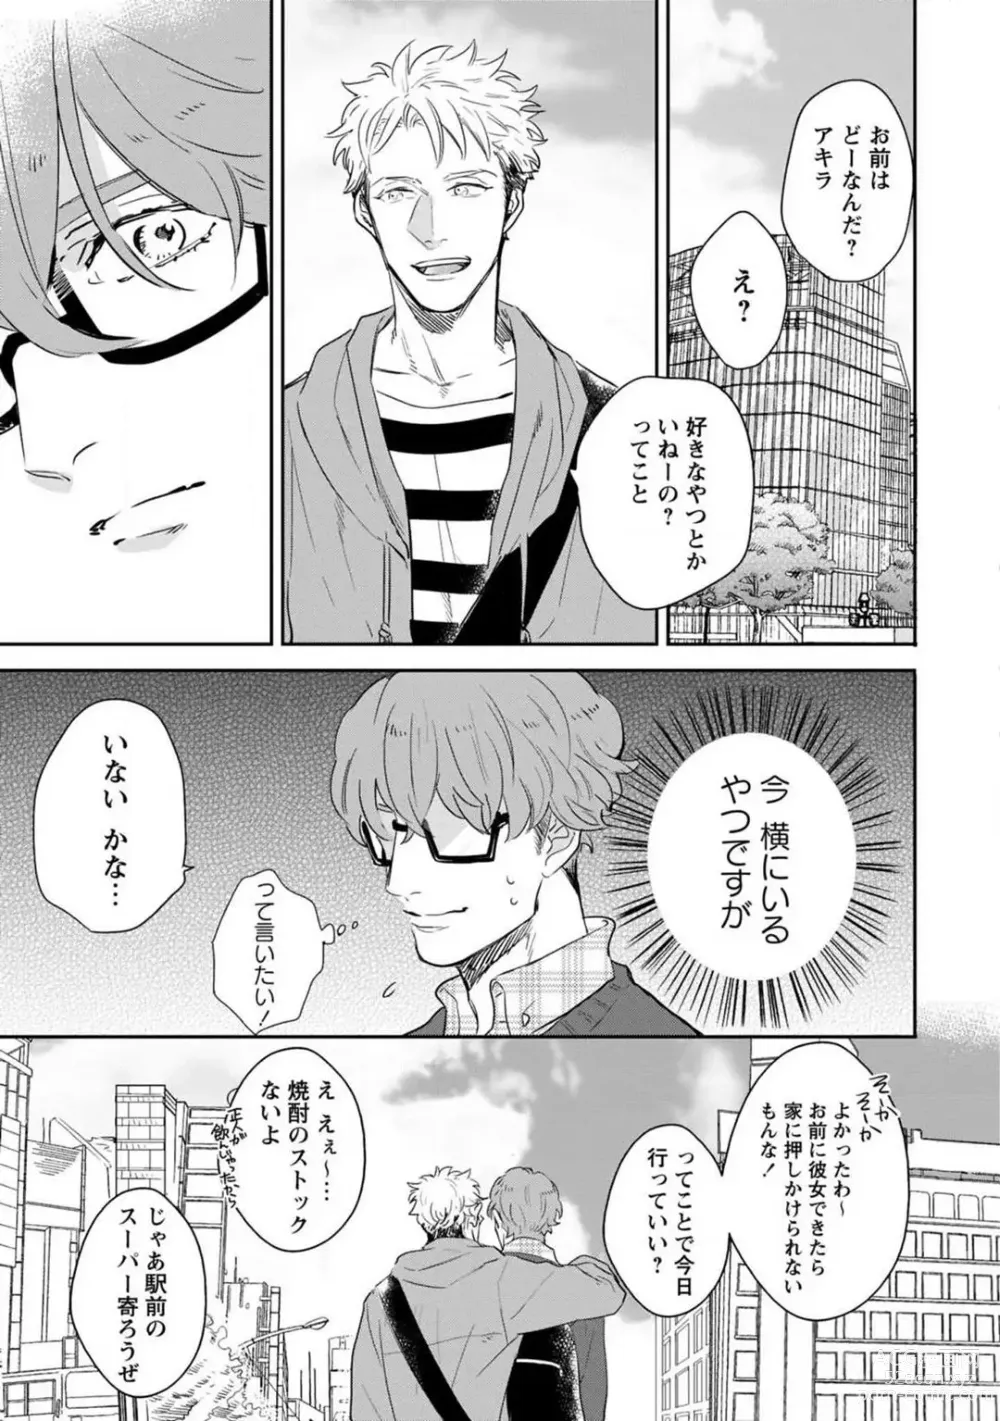 Page 6 of manga Kimi no Shiranai xx